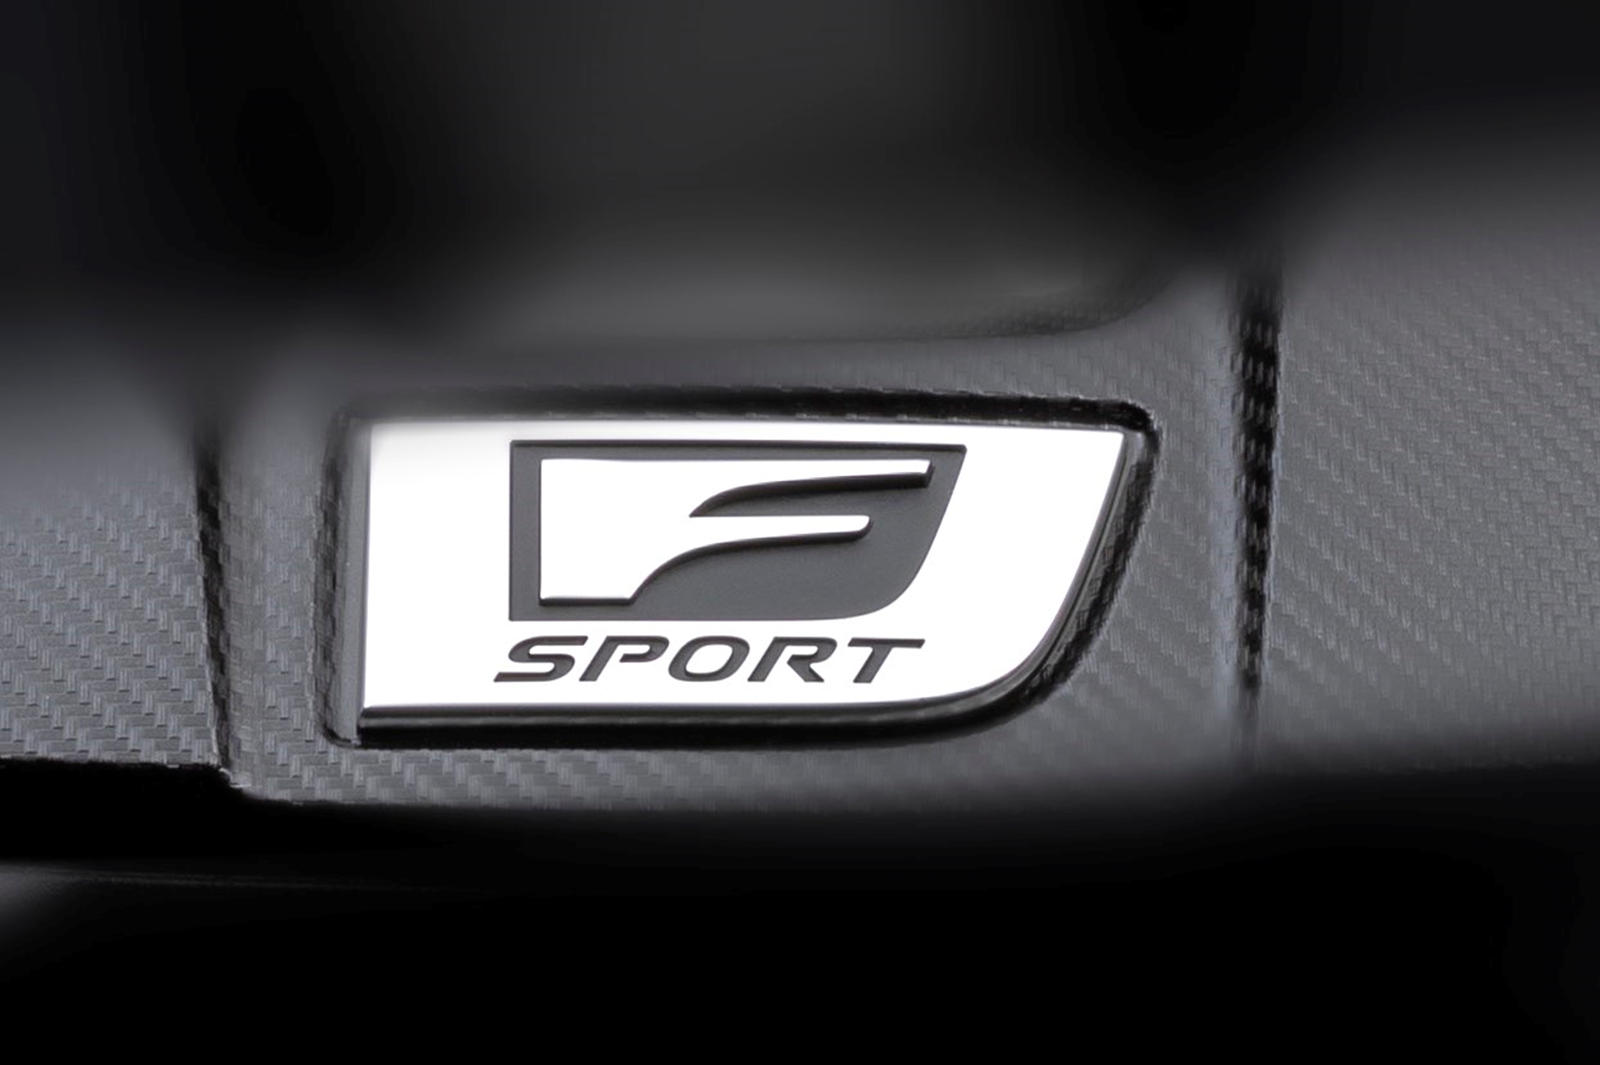 Значок F Sport также указывает на то, что Lexus не показывает здесь новую полноформатную модель F, поэтому мы можем исключить возможность того, что это, по слухам, LC F, LS F и IS F. Чем еще может дразнить нас Lexus?